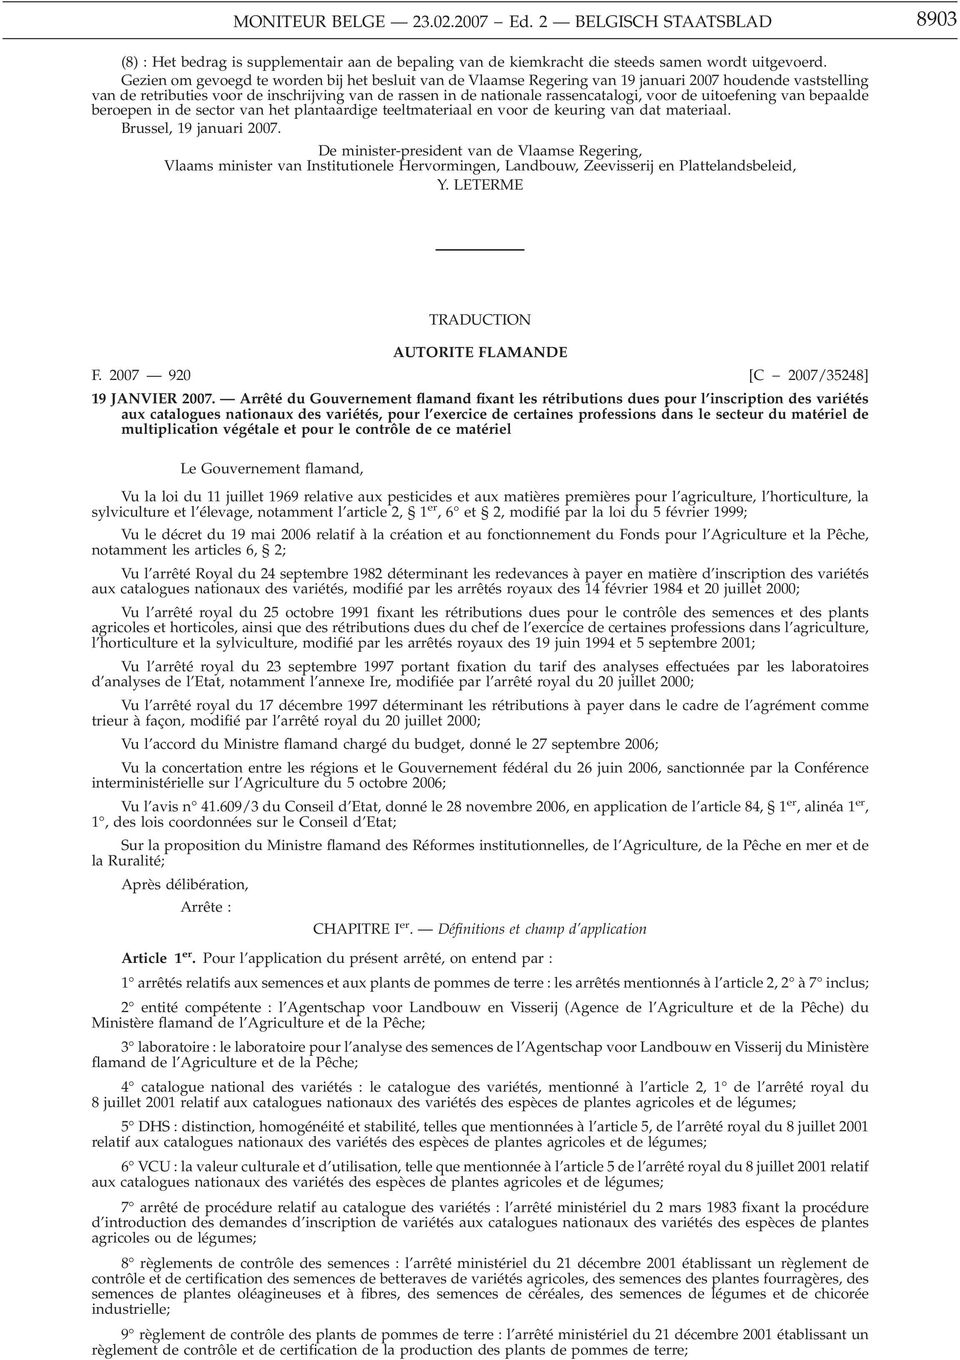 voor de uitoefening van bepaalde beroepen in de sector van het plantaardige teeltmateriaal en voor de keuring van dat materiaal. Brussel, 19 januari 2007.